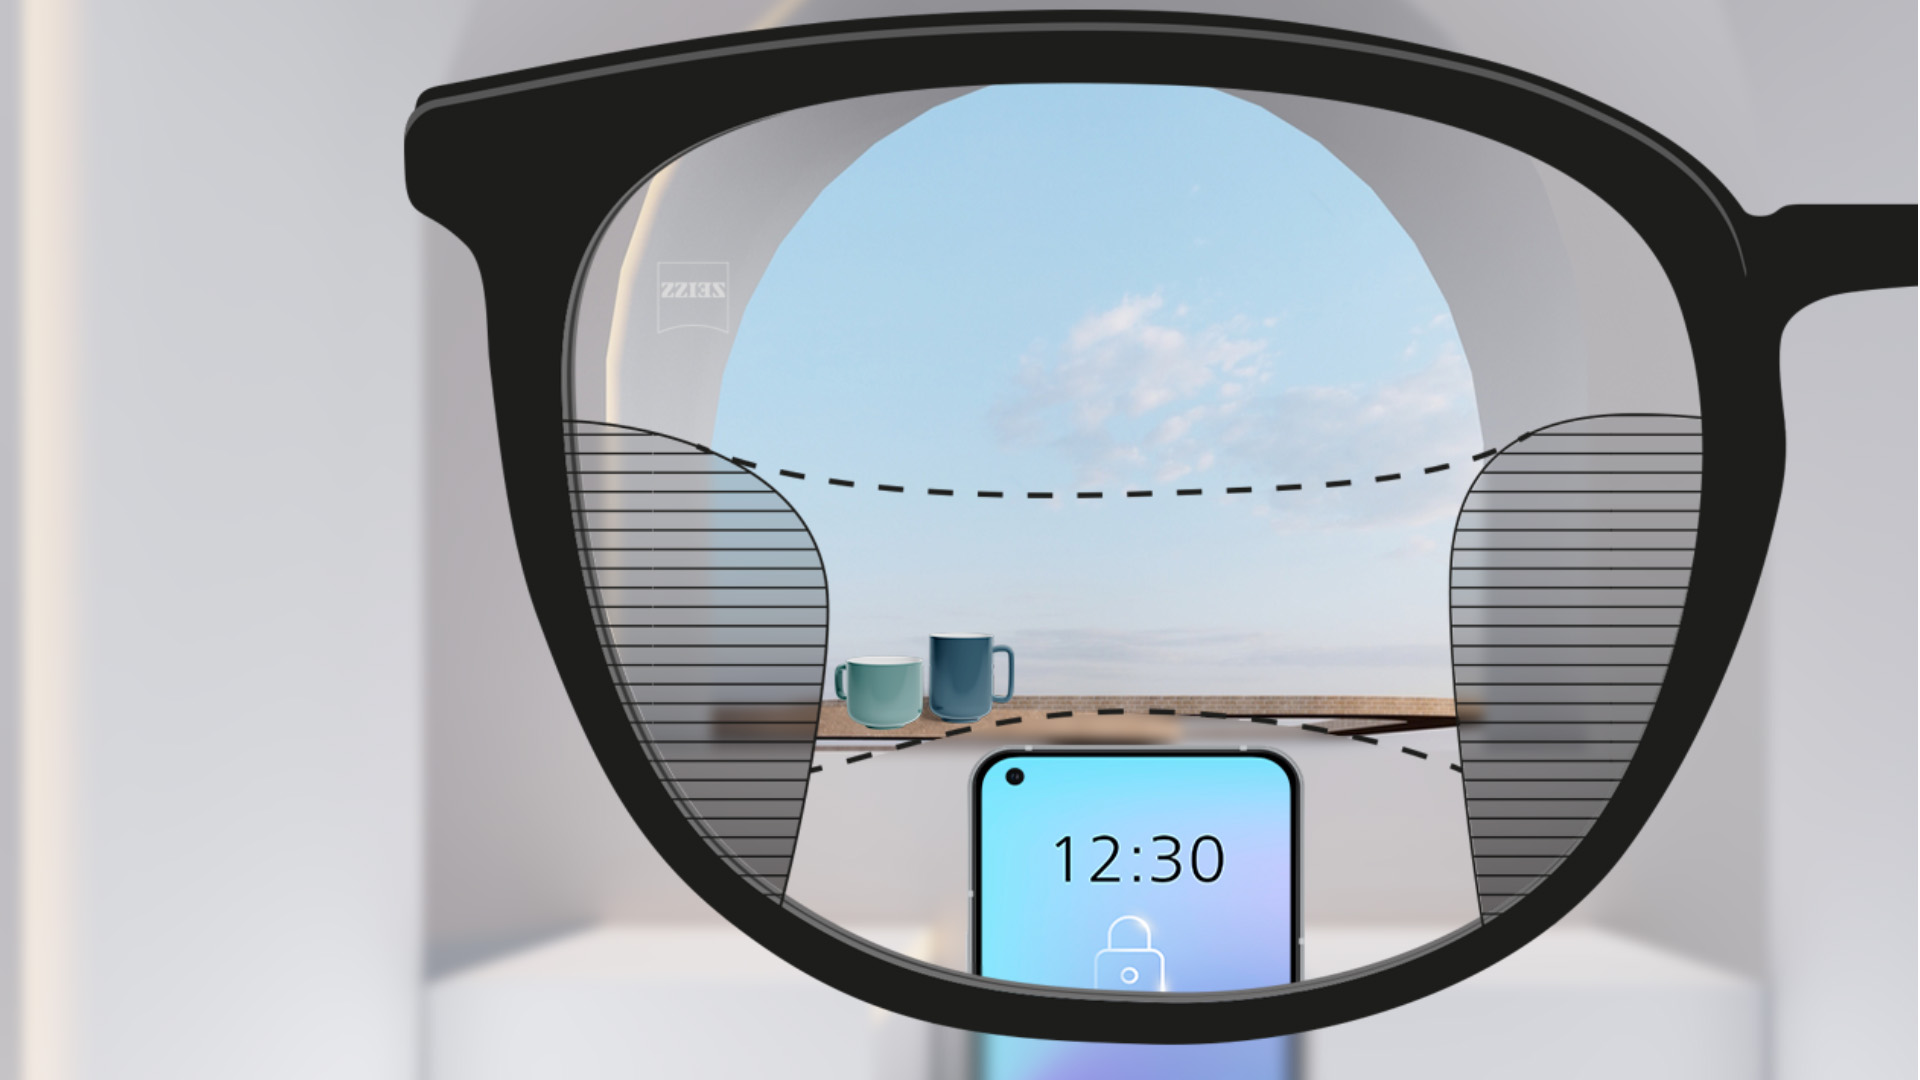 Abbildung mit Blick durch ein ZEISS SmartLife Gleitsichtglas. Ein Smartphone ist zu sehen, und im Hintergrund Tassen. Das Brillenglas ist vollkommen klar, mit geringen unscharfen Flächen links und rechts.